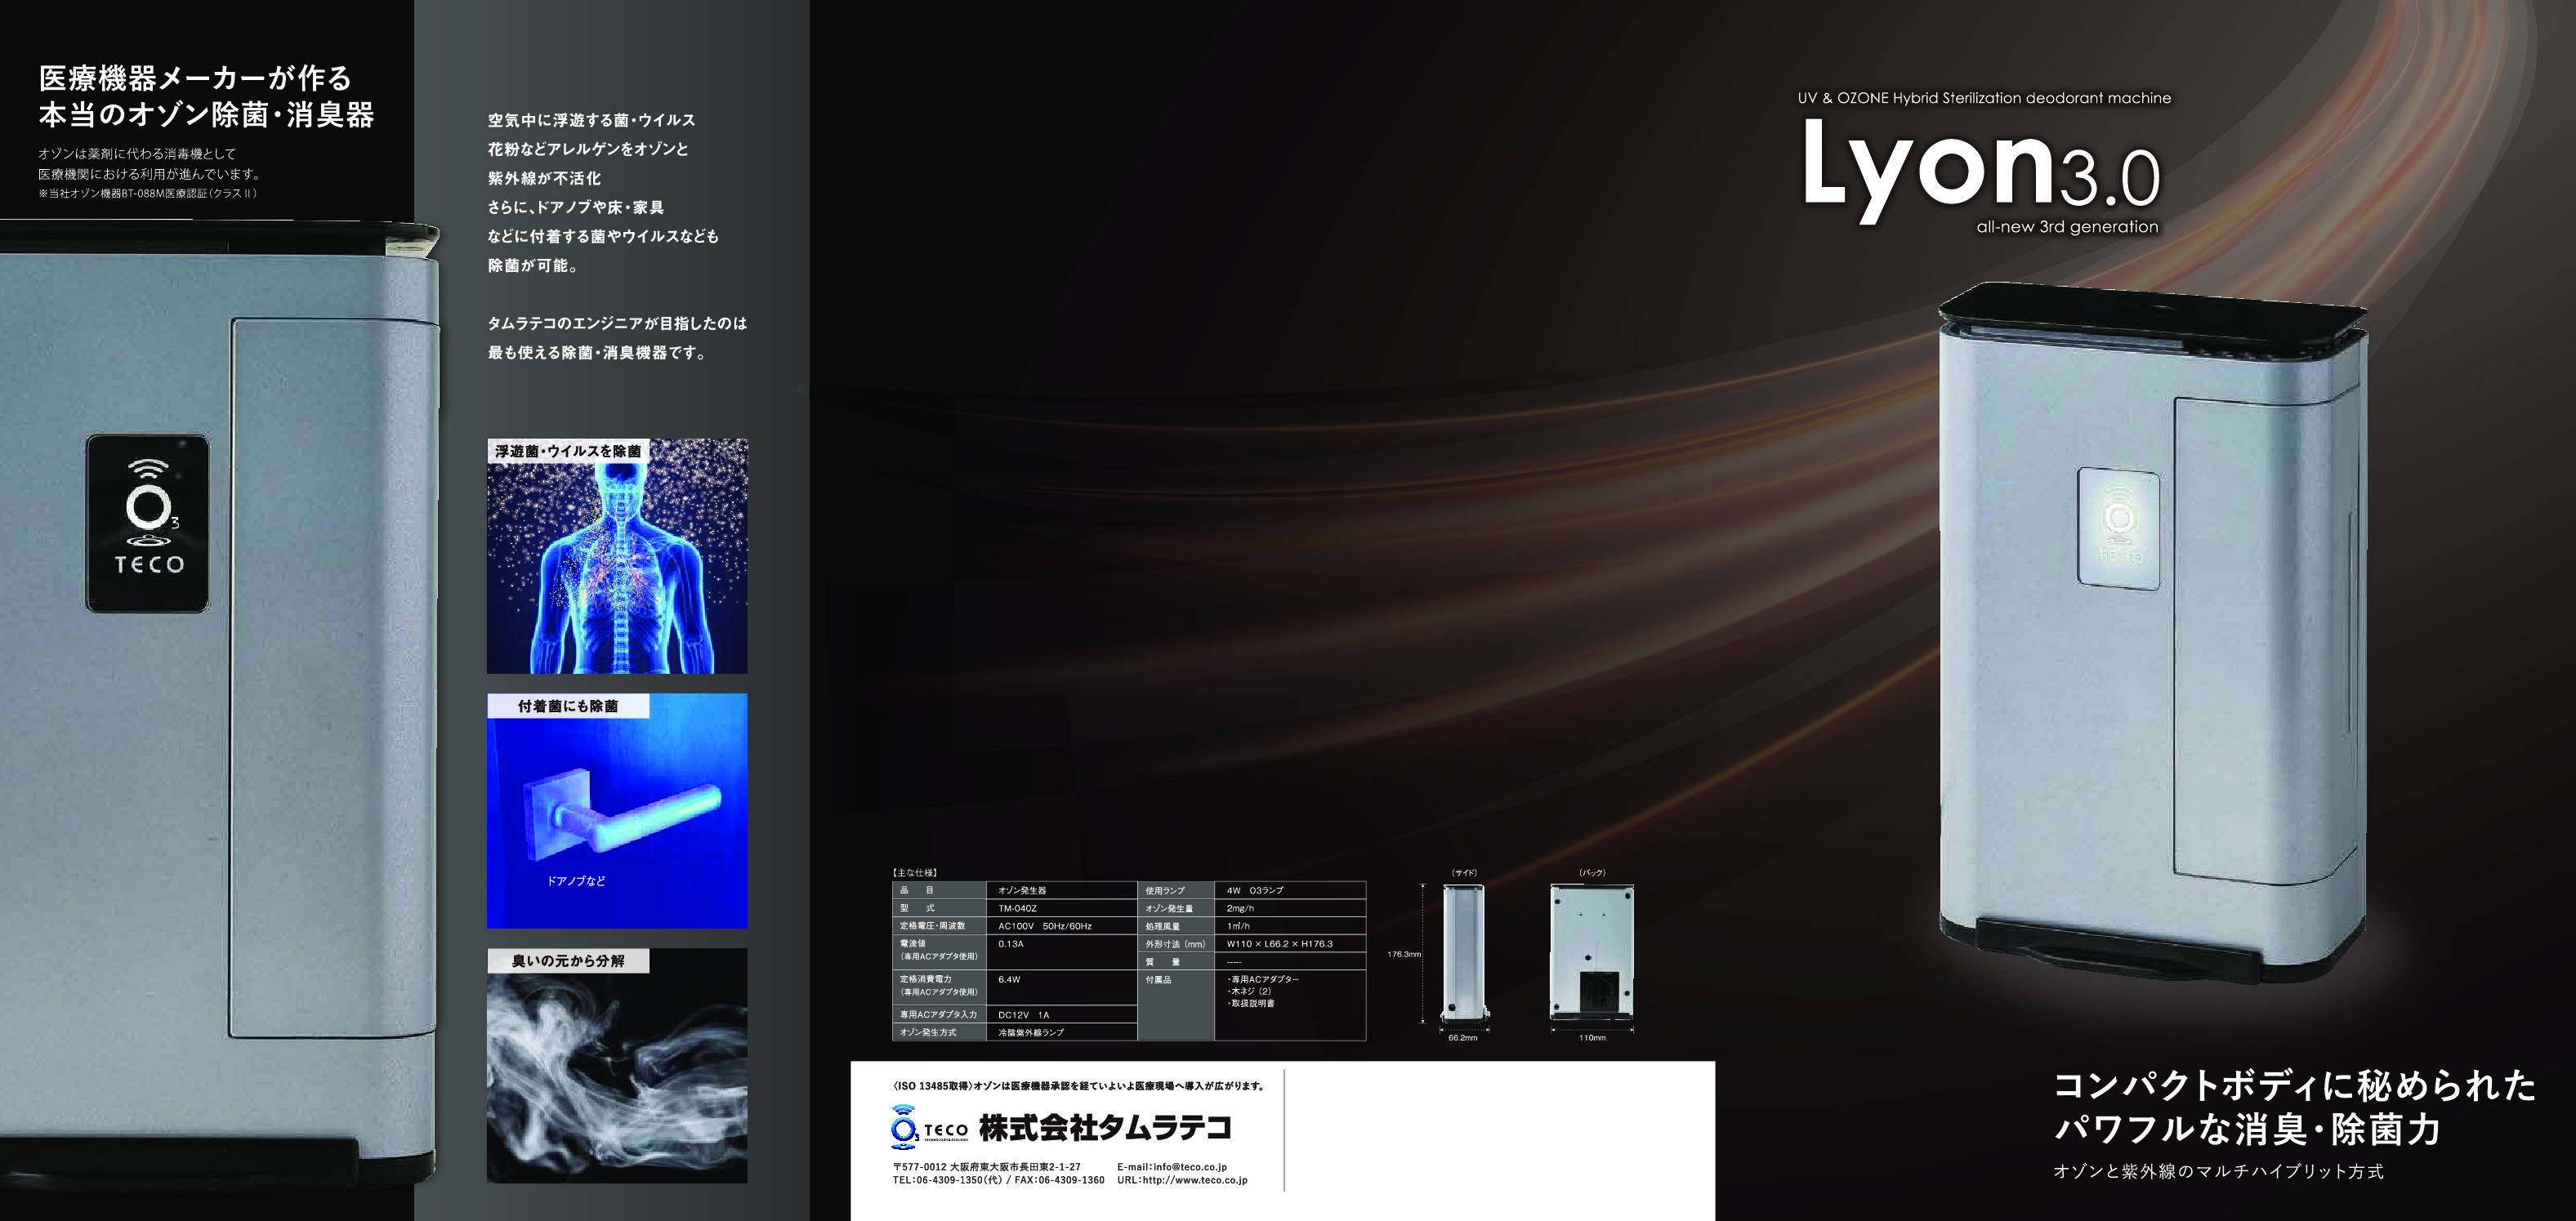 代引き手数料無料 Lyon3.0 タムラテコ製品 - 空気清浄器 - ucs.gob.ve